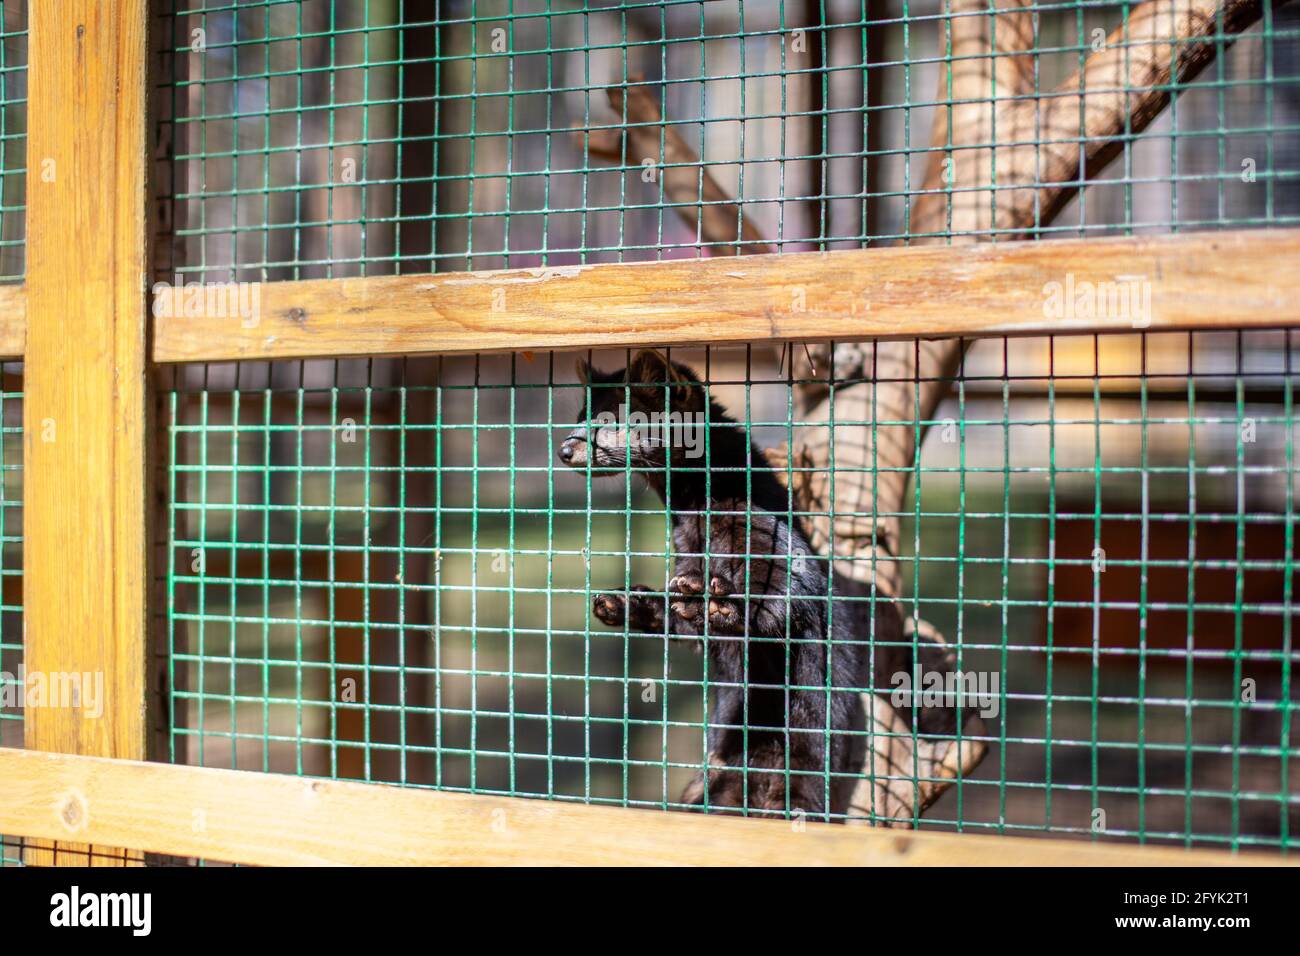 Pequeño animal negro europeo mink en una jaula, detrás de las barras. Foto de stock